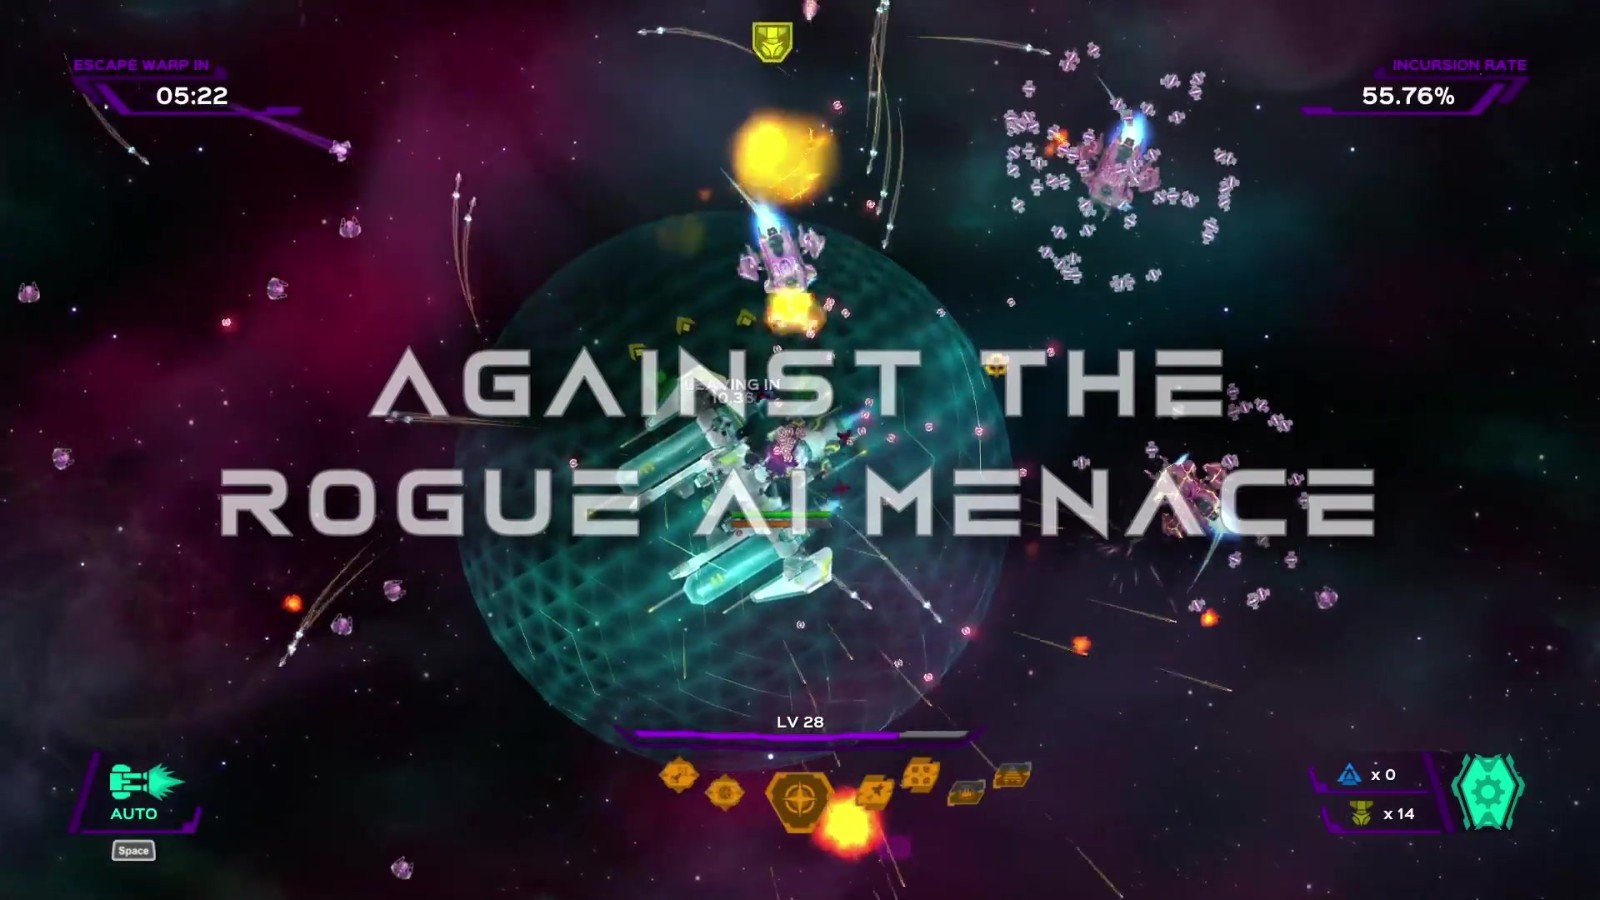 太空射击游戏《PhaigeX:超时空幸存者》面向PC公布